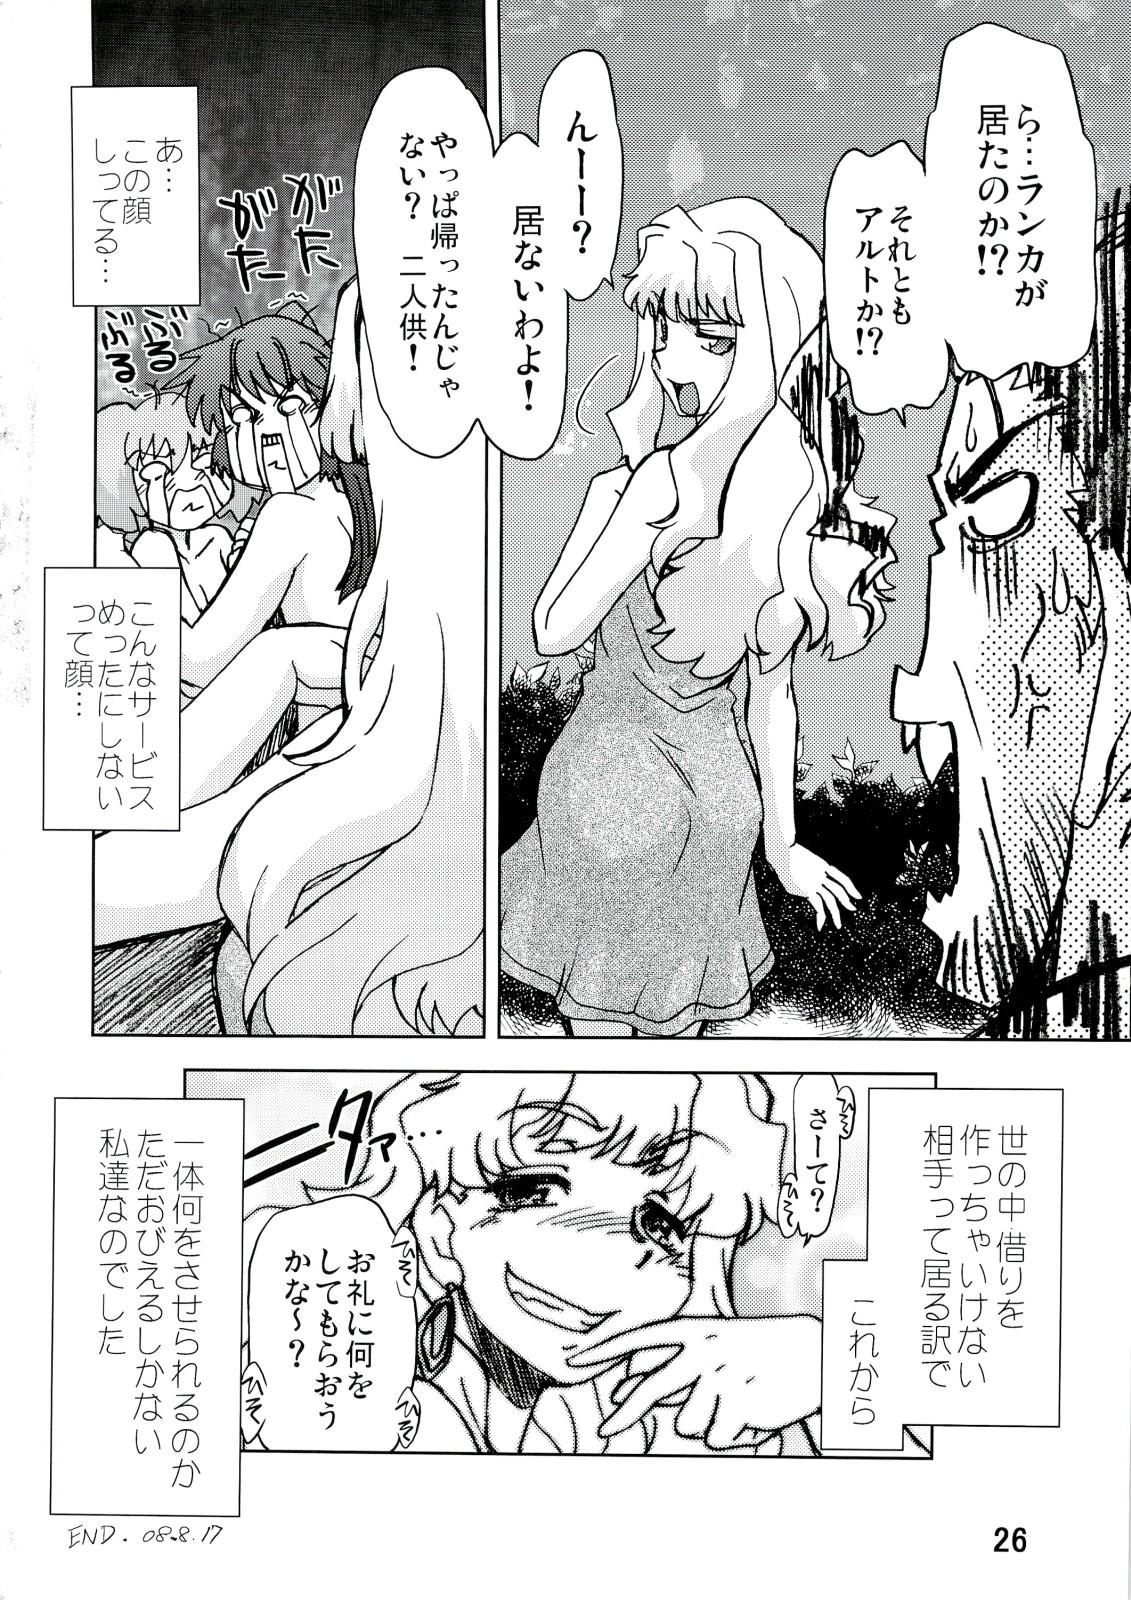 Rubbing Kishou Tenketsu 6 - Macross frontier Dick Sucking - Page 25